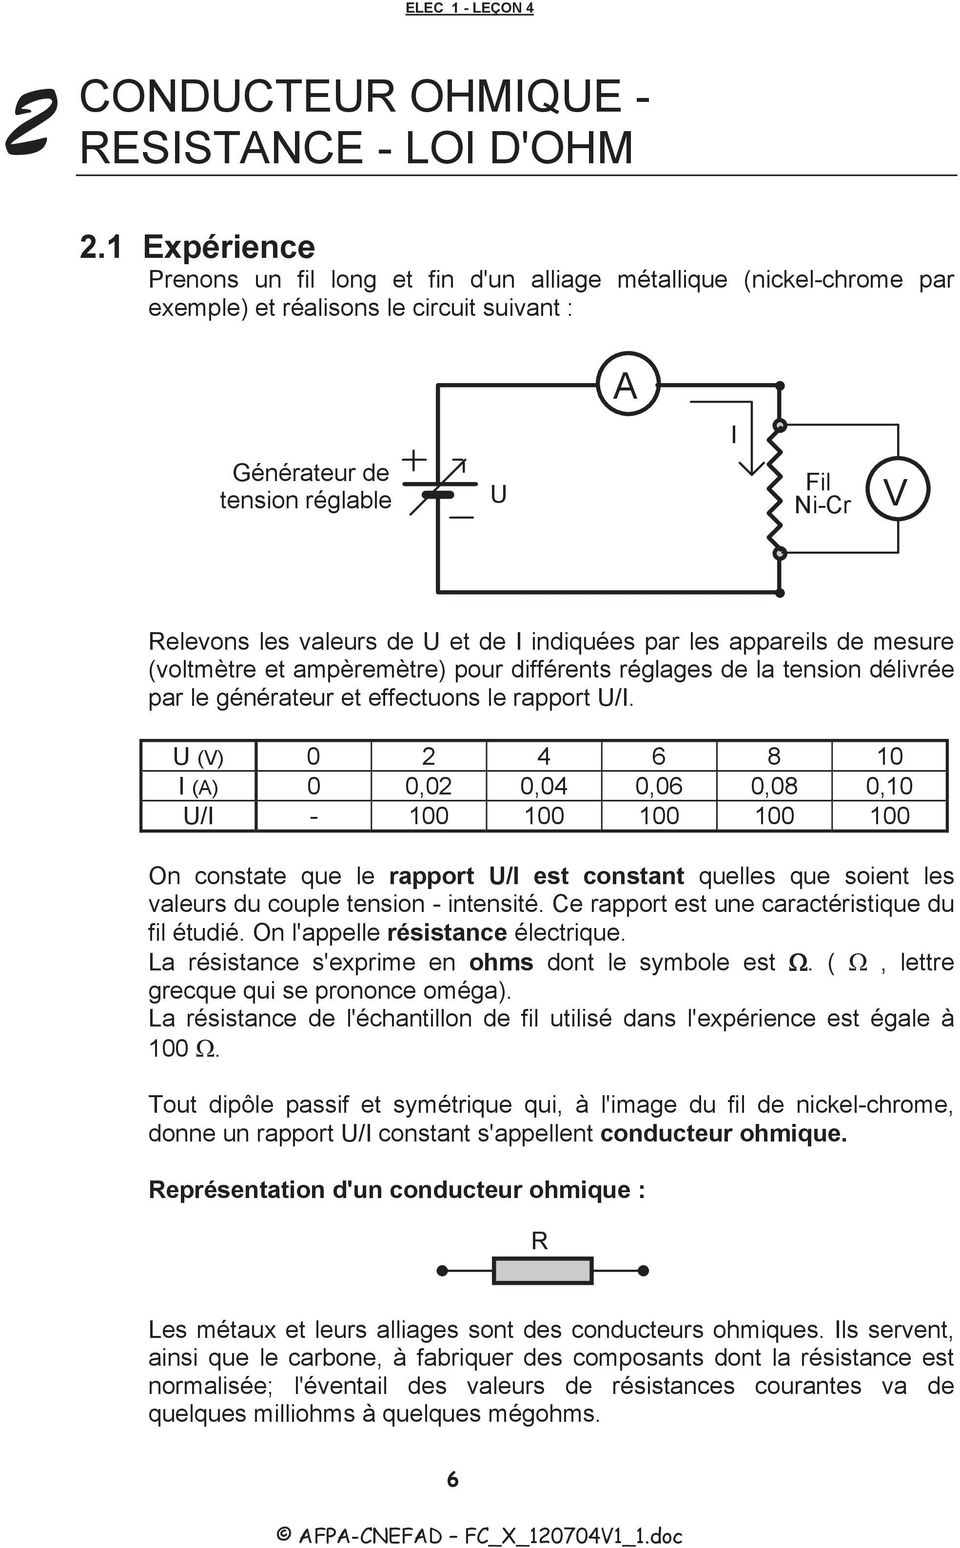 U et de I indiquées par les appareils de mesure (voltmètre et ampèremètre) pour différents réglages de la tension délivrée par le générateur et effectuons le rapport U/I.